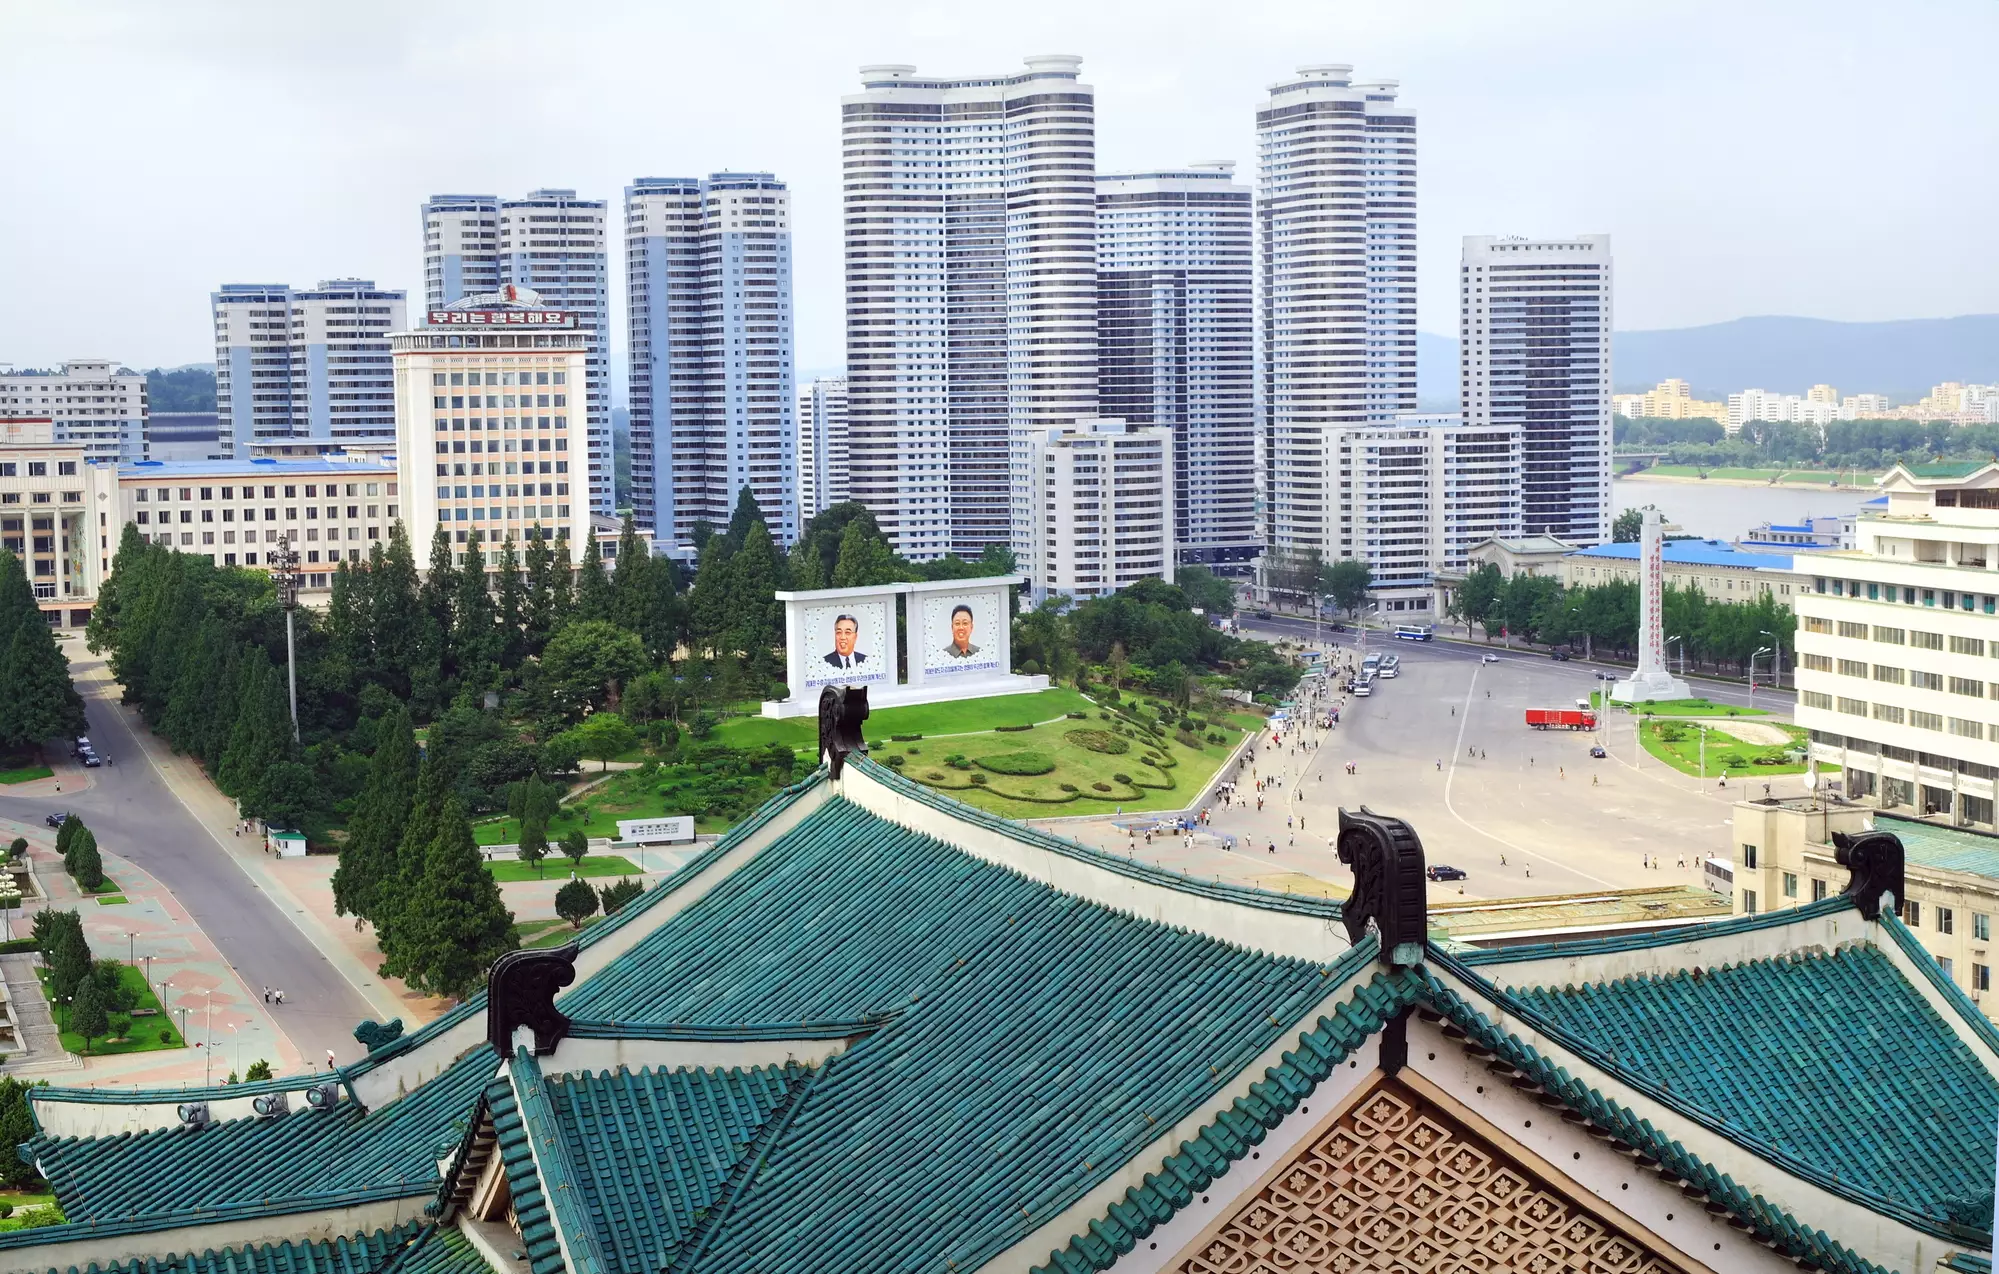 Панорама Пхеньяна, столицы Северной Кореи